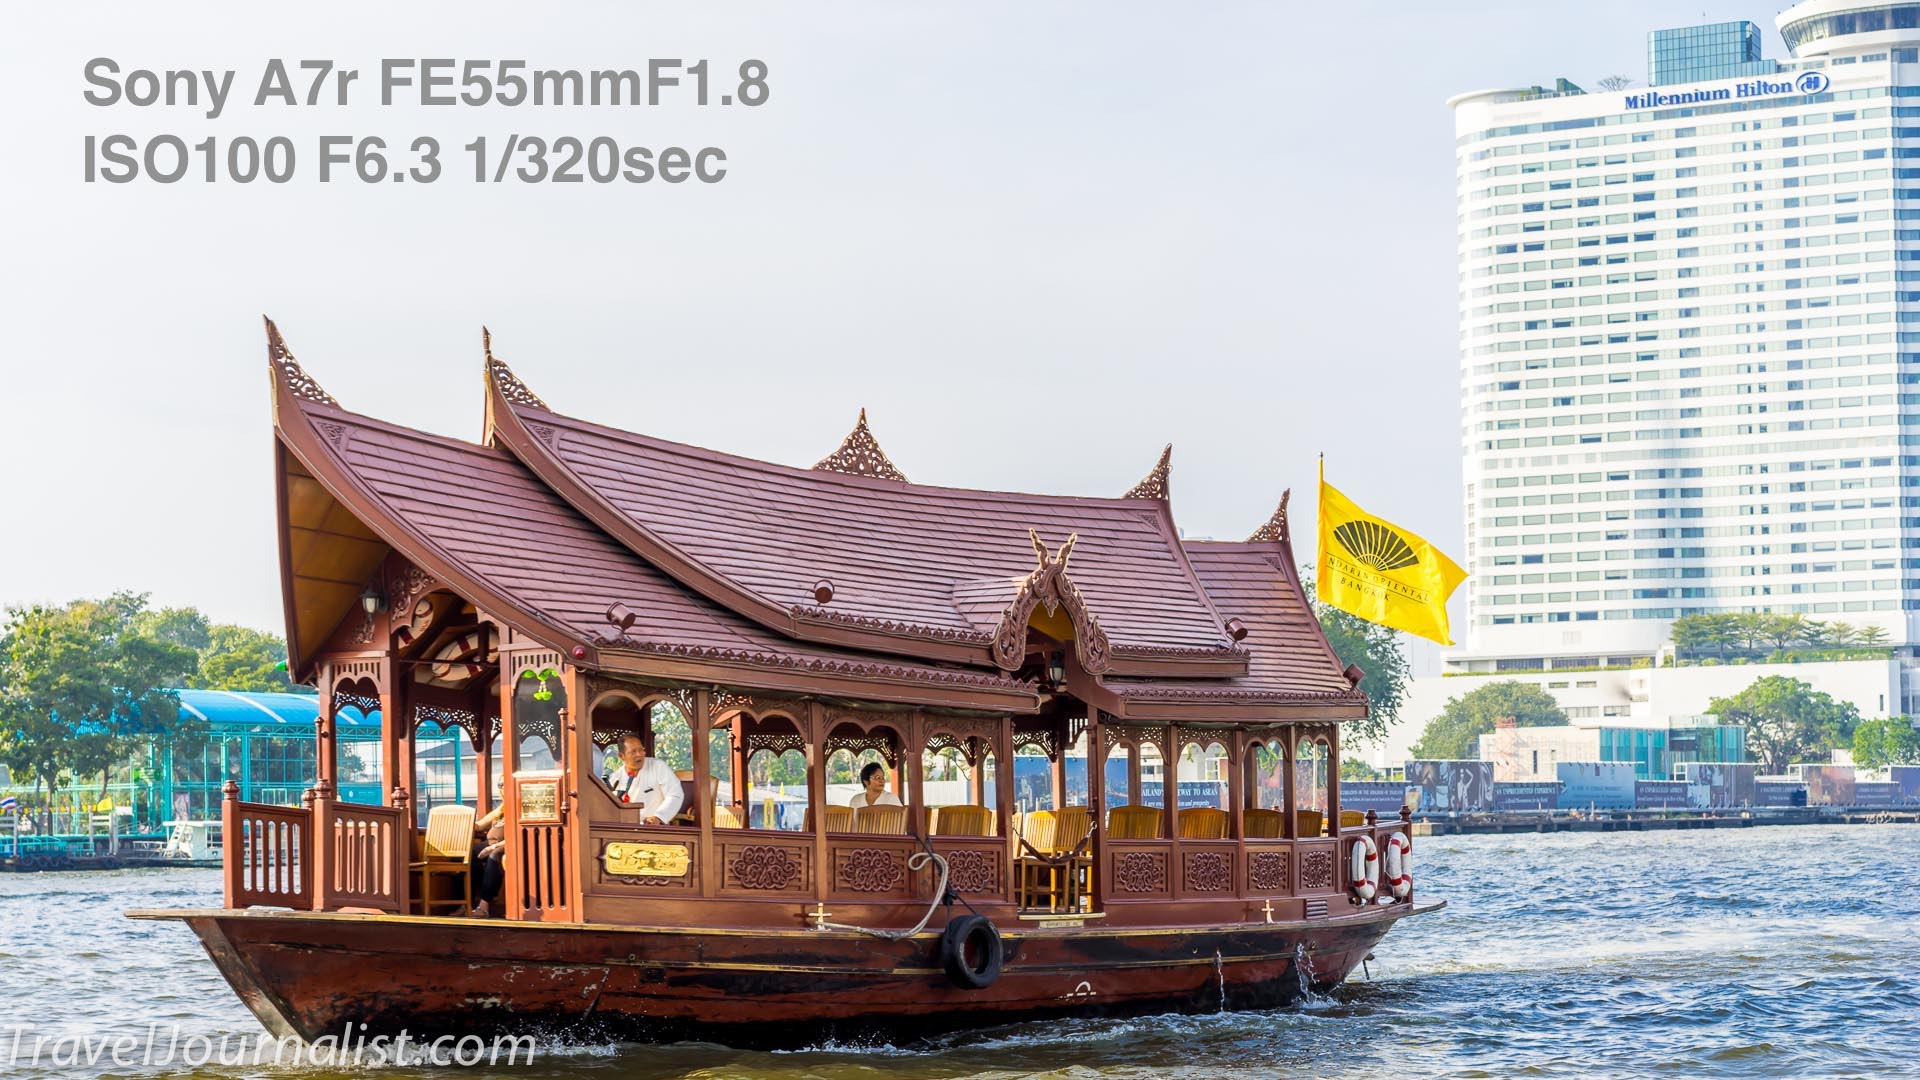 Boat-Mandarin-Oriental-Bangkok-Sony-A7r-FE-55mmF18